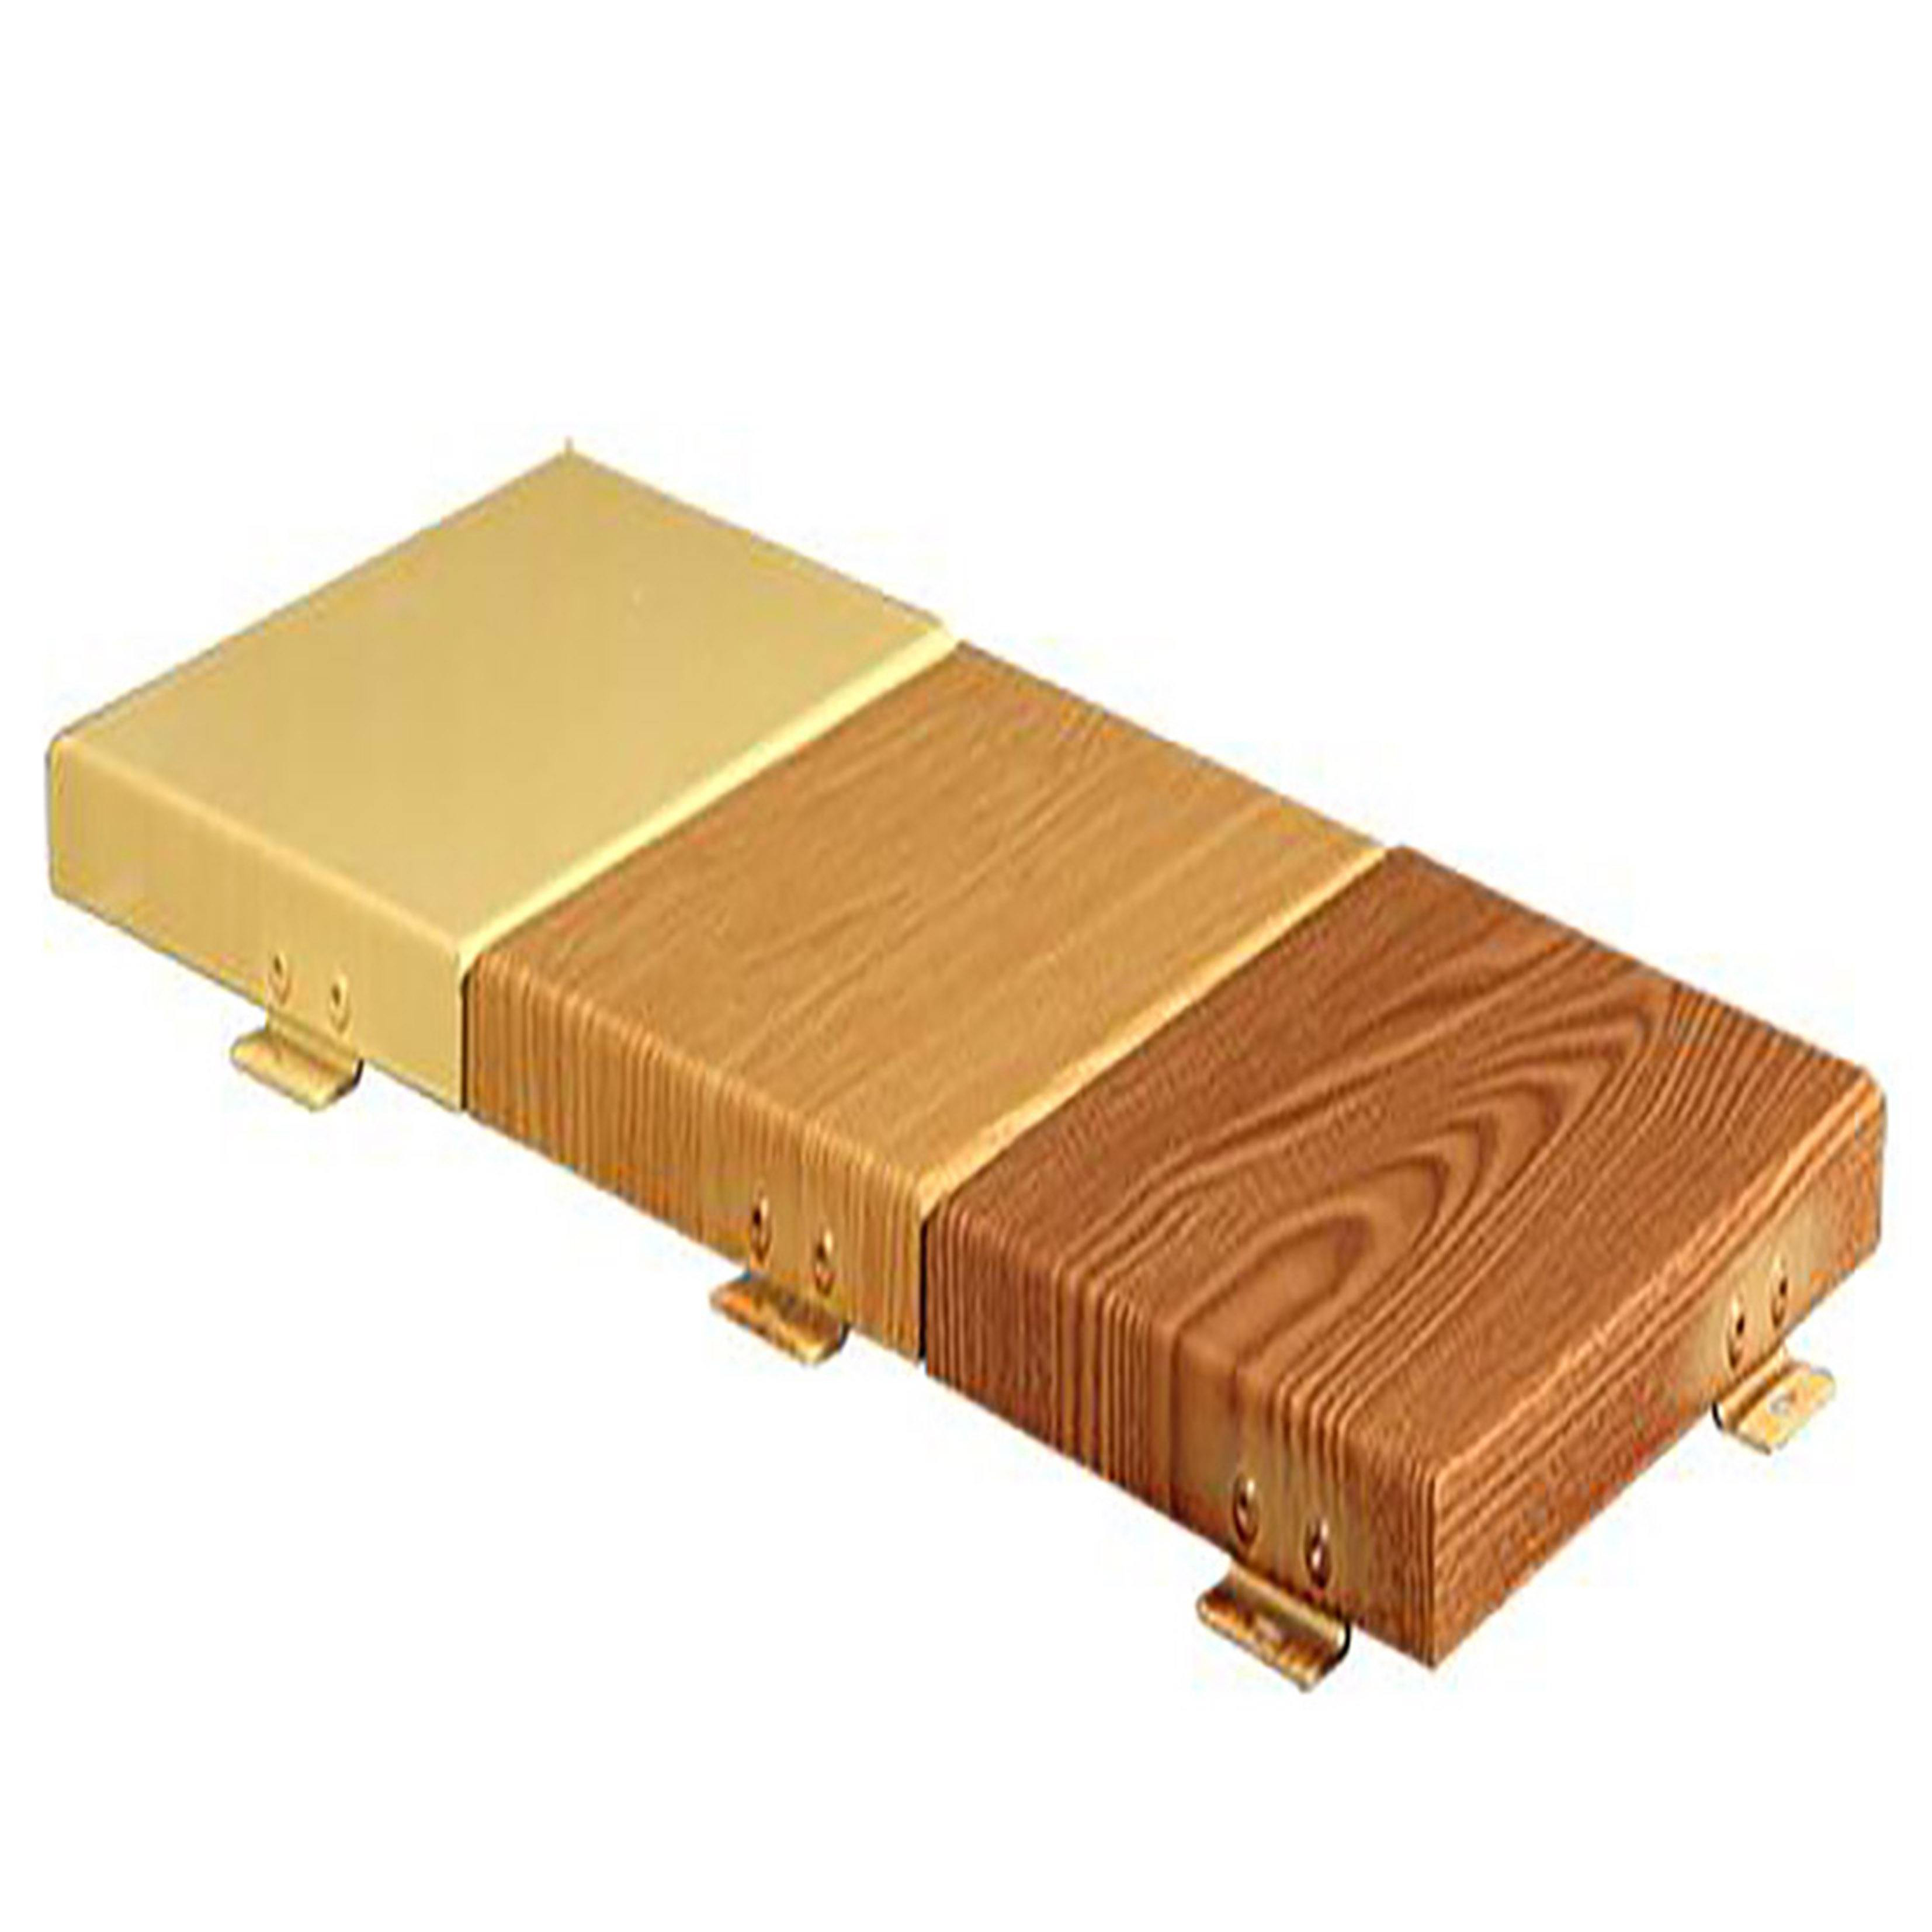 木纹铝单板厂家 木纹铝单板供应商 木纹铝单板厂家报价